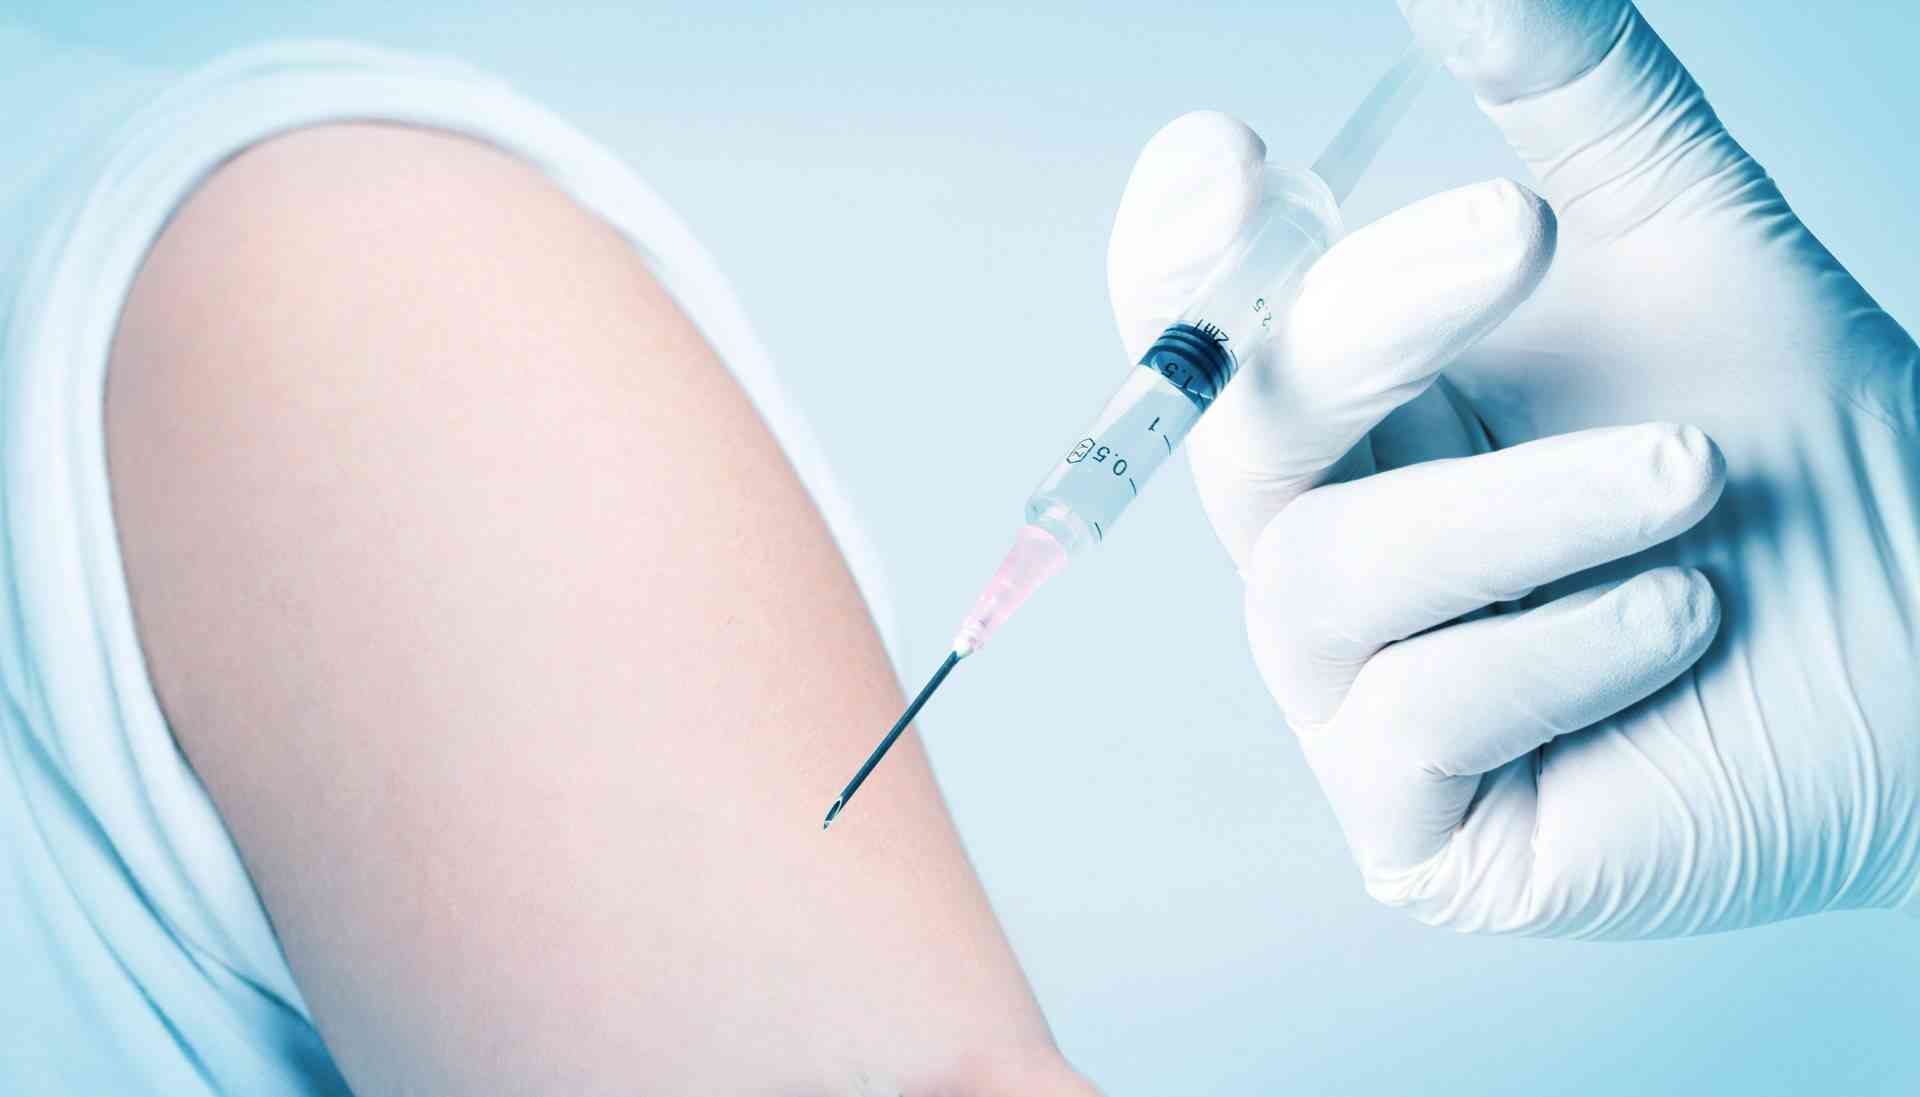 接种五联疫苗后可能出现红肿痛痒症状